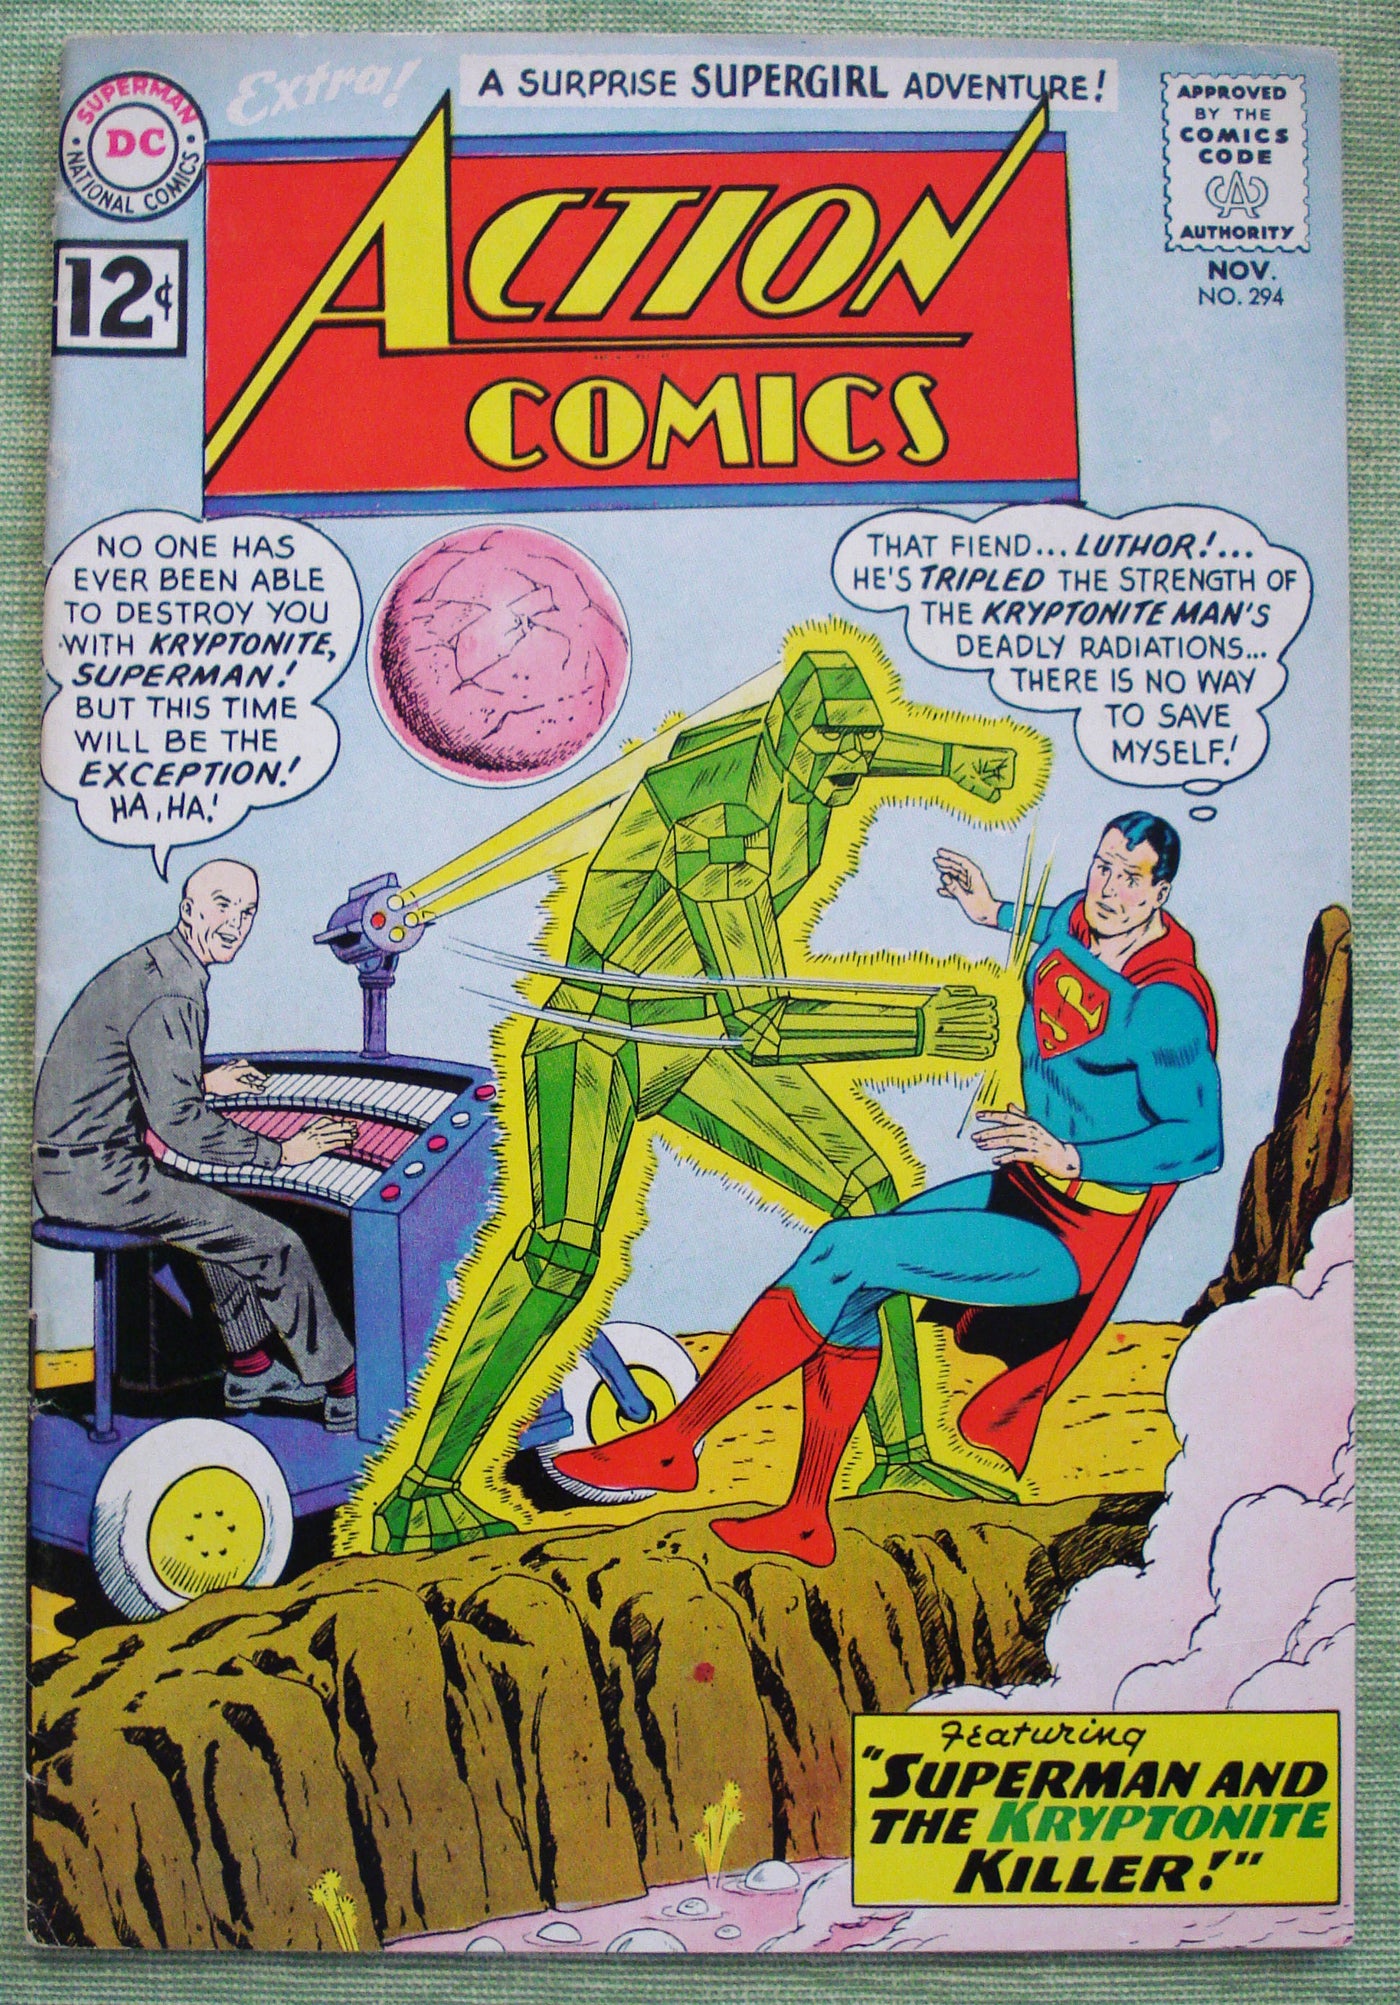 Action Comics #294 DC Comics Nov 1962